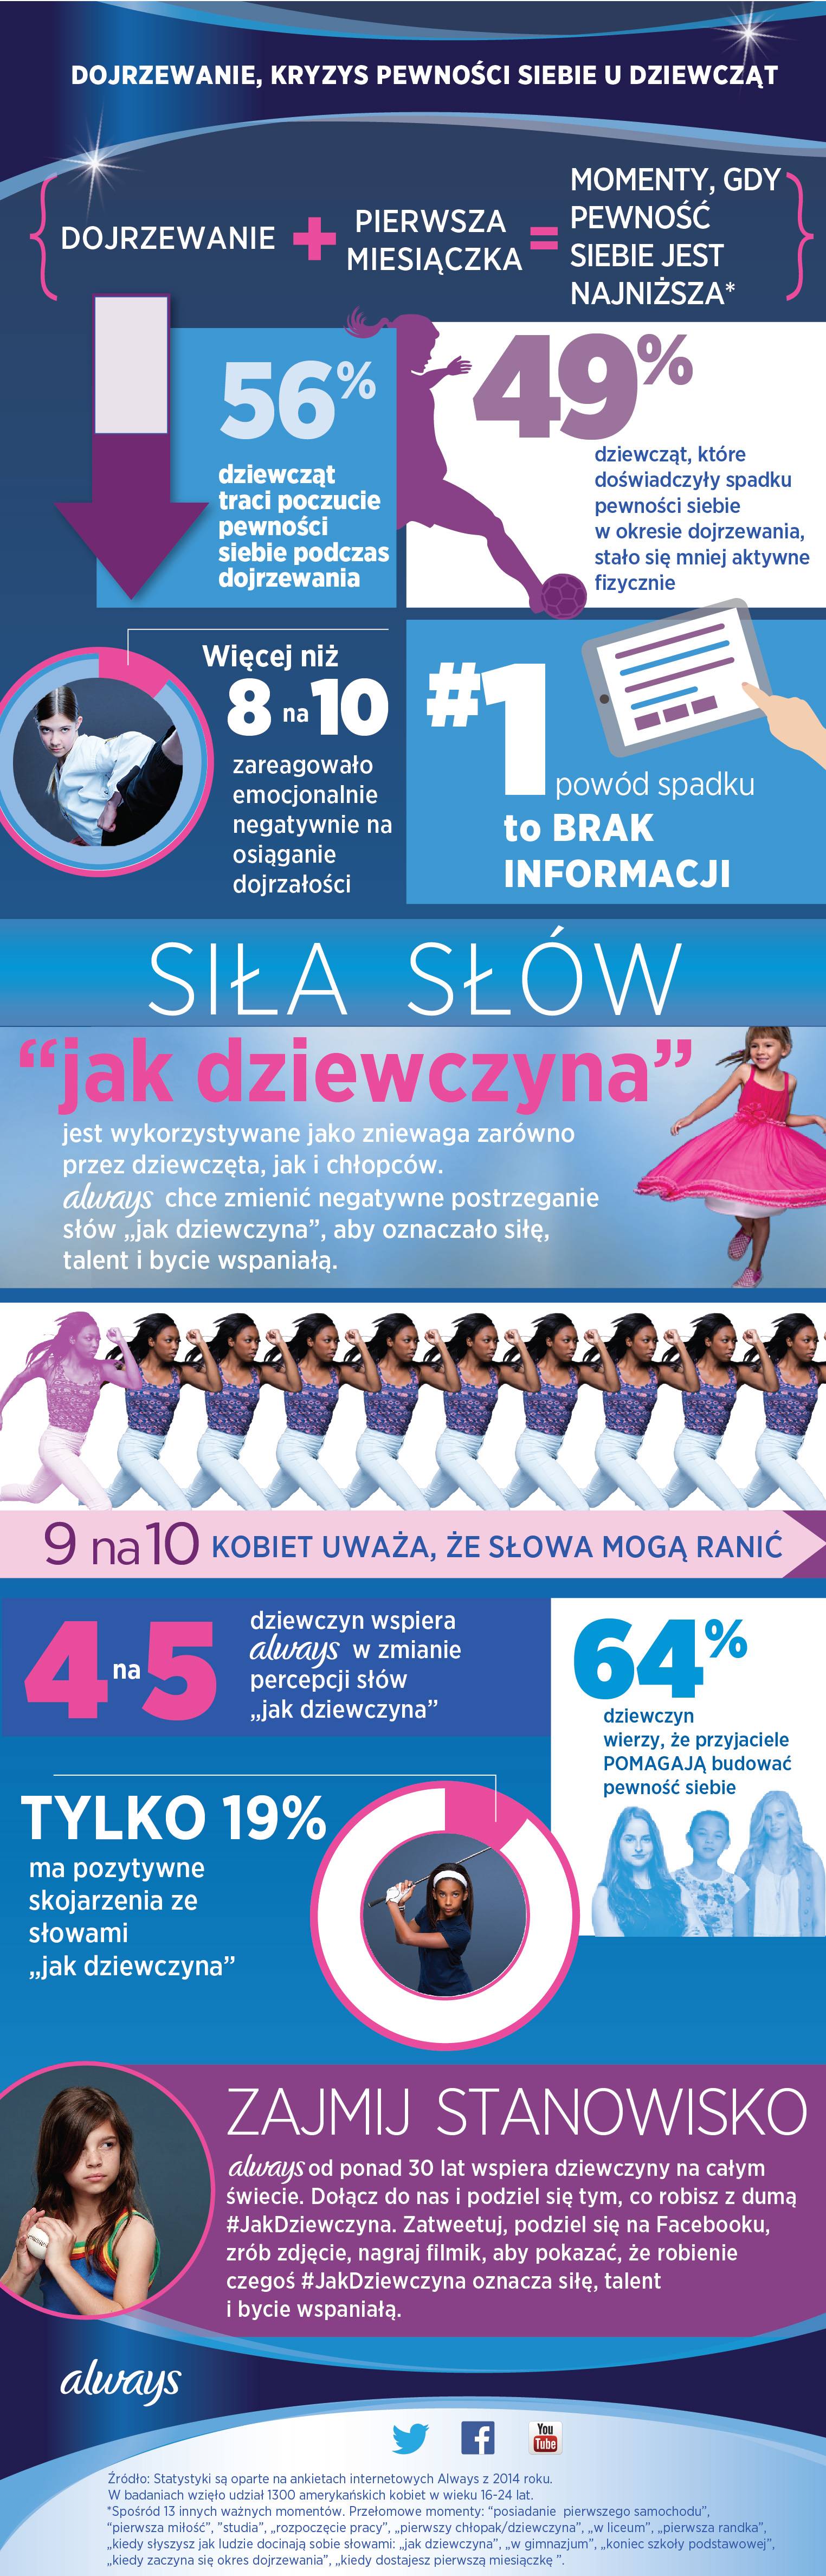 Always_Jak_Dziewczyna_Infografika